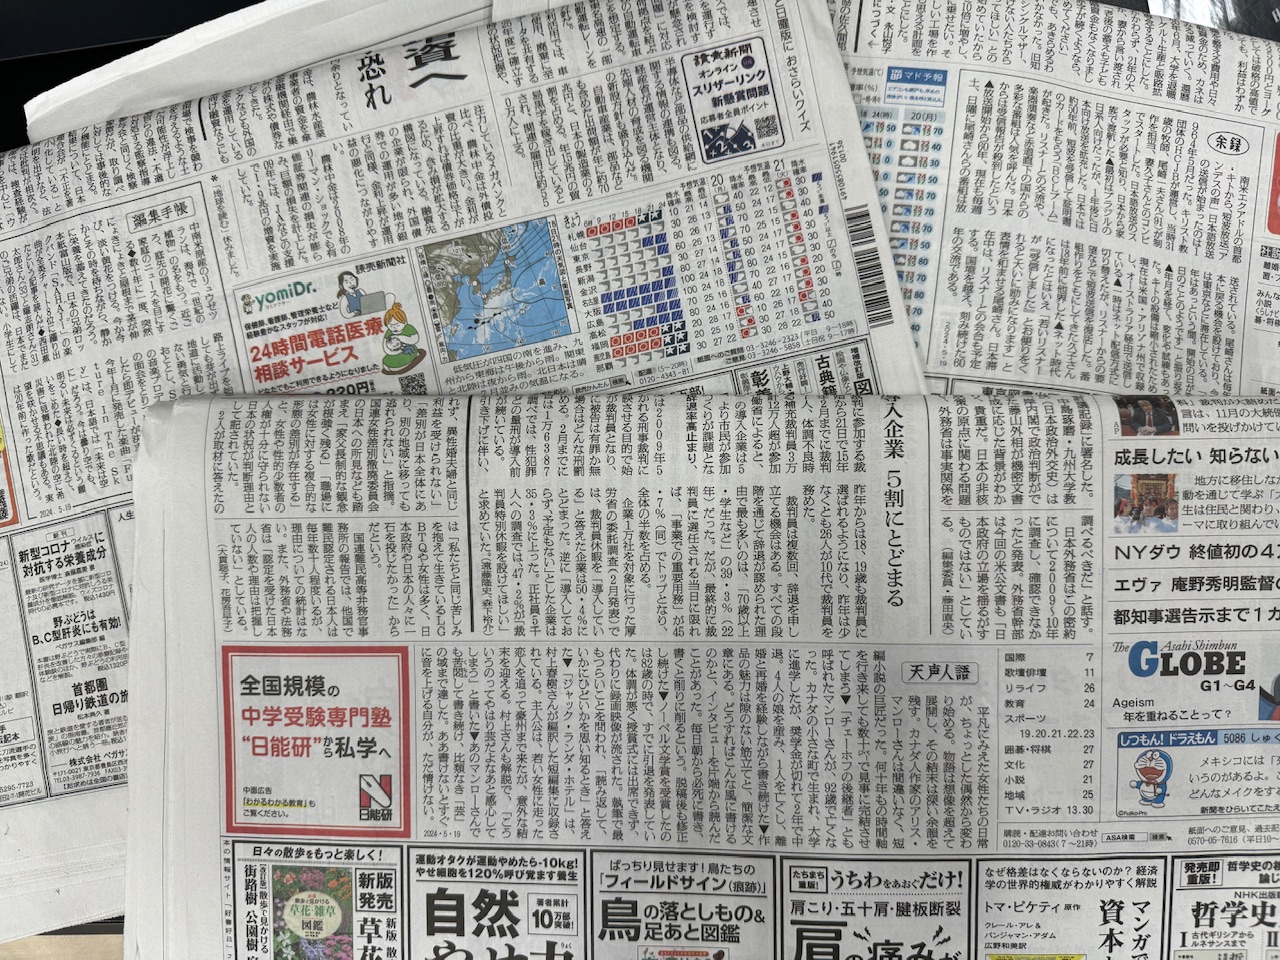 新聞各紙1面のコラム、左から読売新聞「編集手帳」、朝日新聞「天声人語」、毎日新聞「余録」